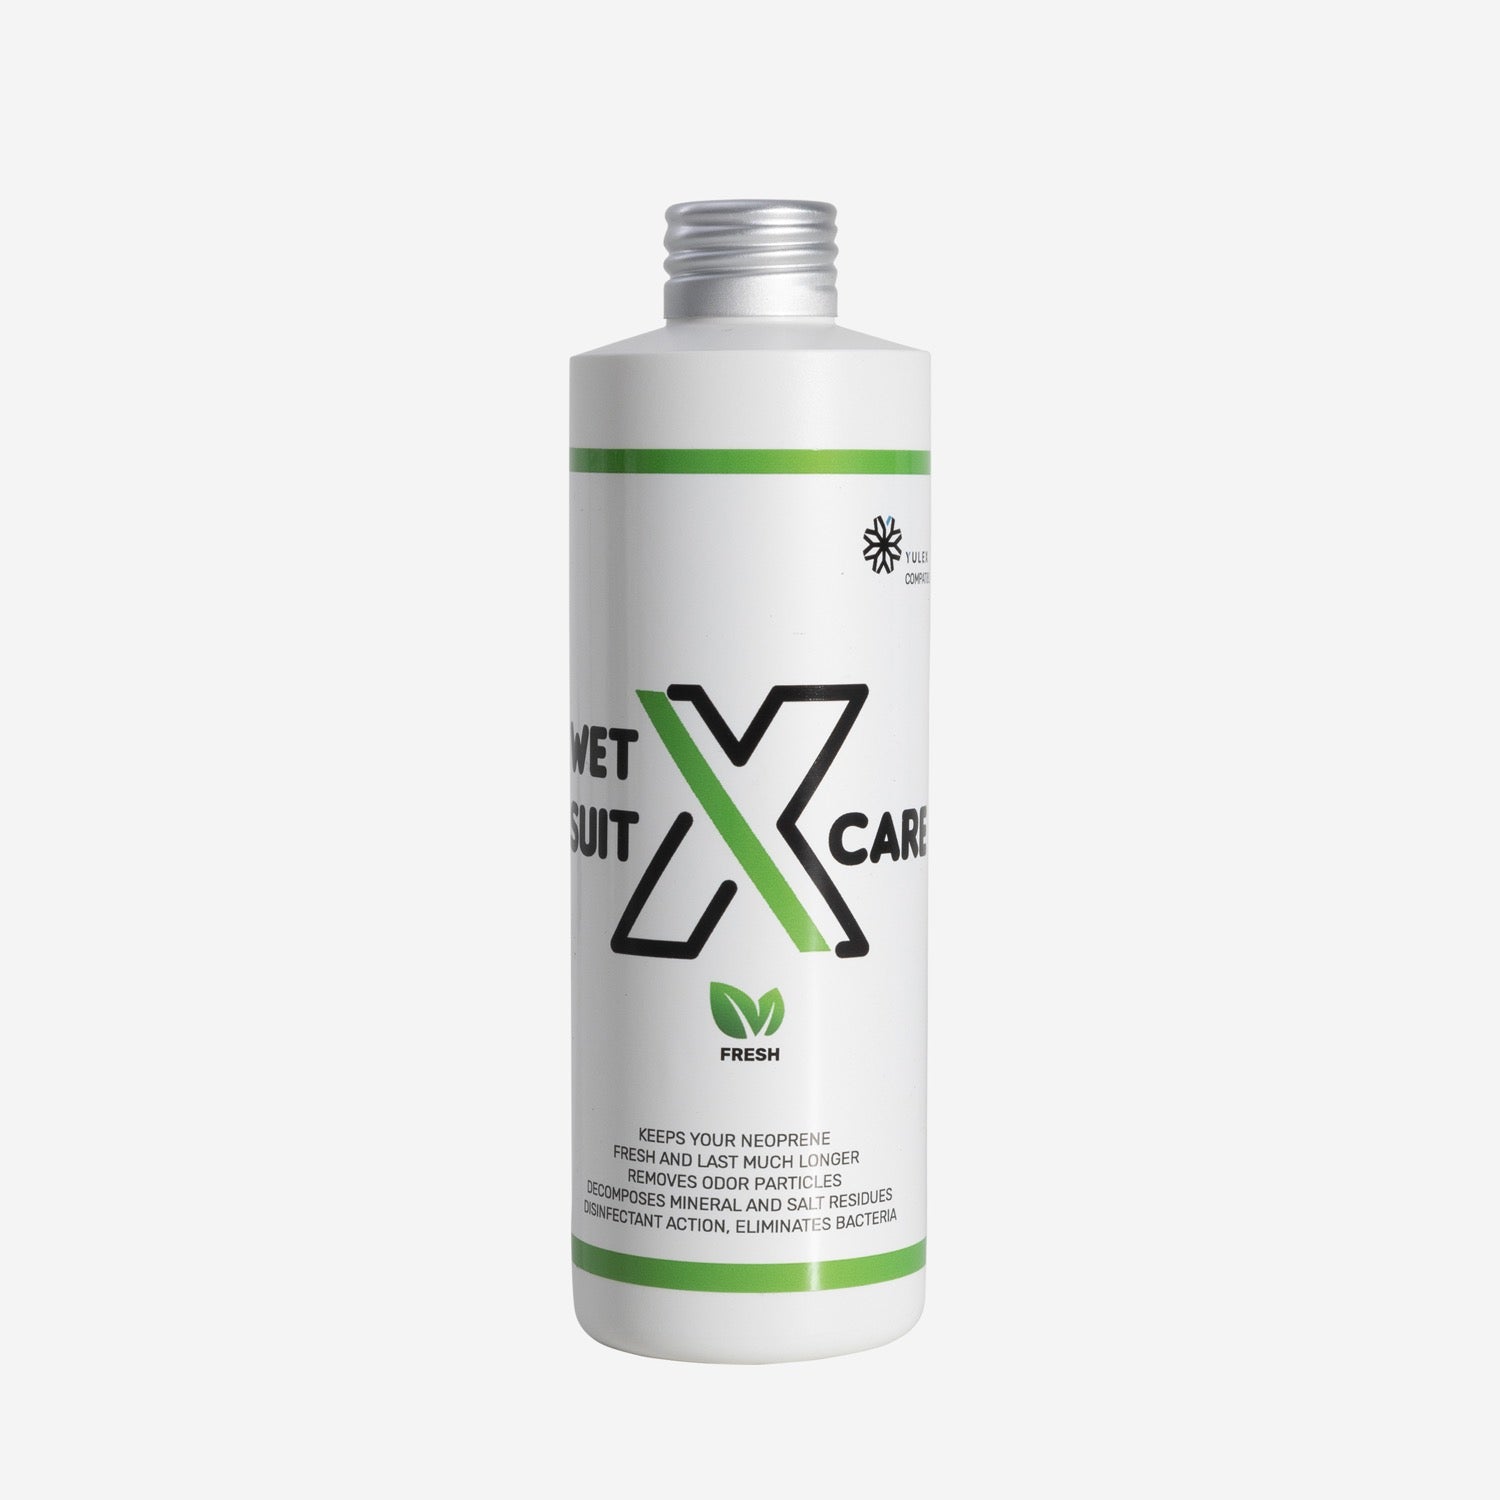 X-Care - Shampoing Neoprene - 250ml - Parfum Fresh